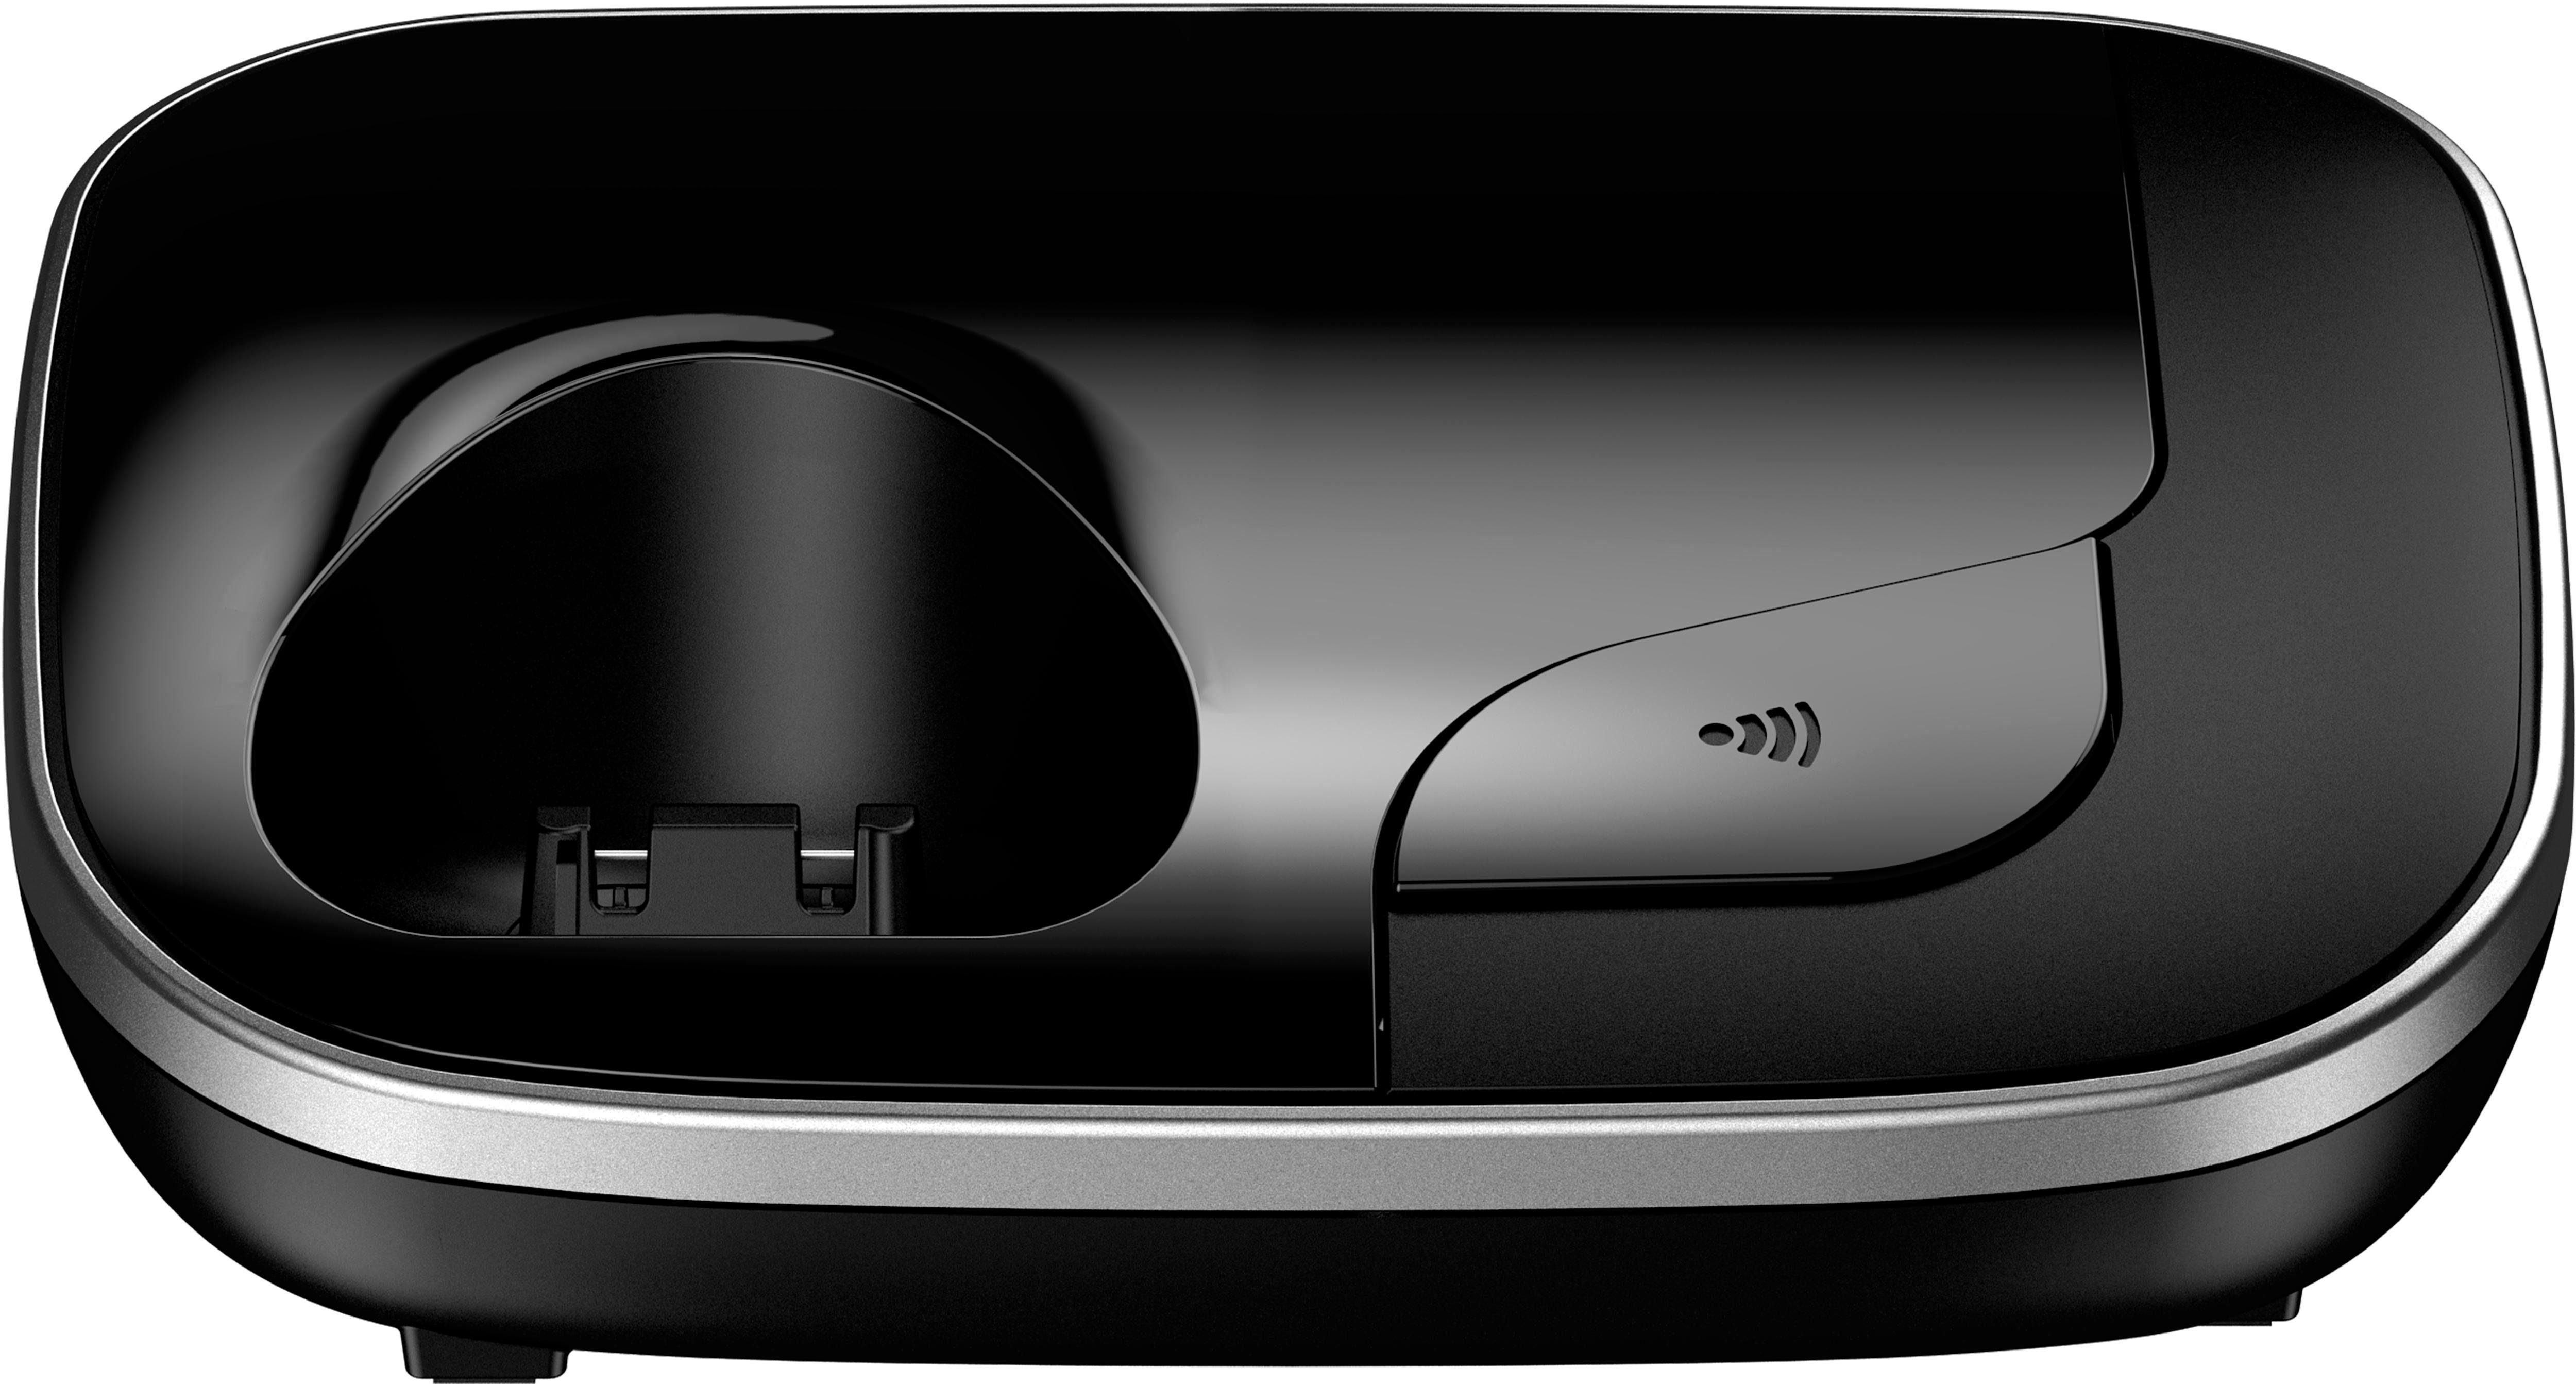 schwarz KX-TGJ310 Schnurloses Panasonic (Mobilteile: DECT-Telefon 1, Freisprechen) Weckfunktion,